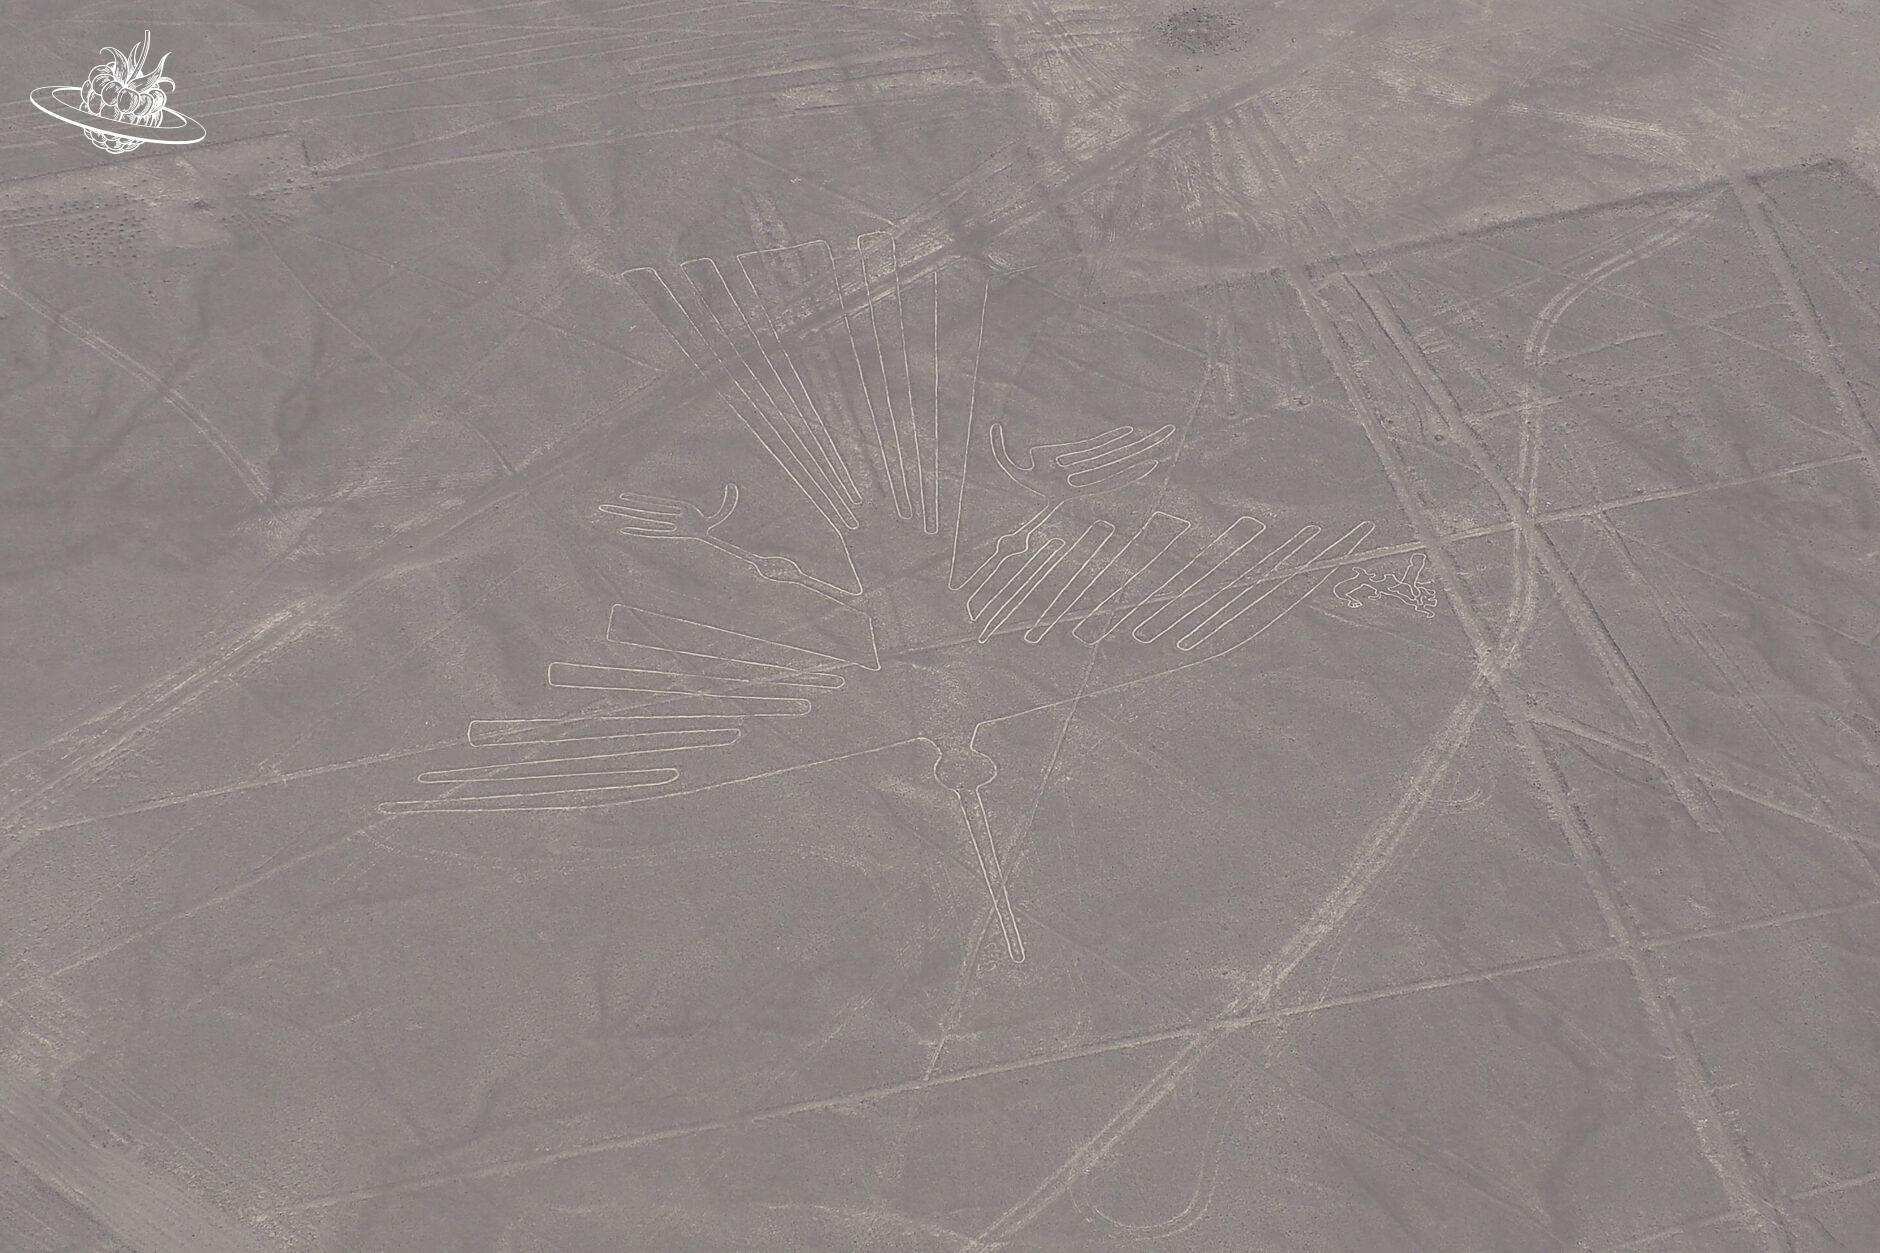 Die Figur "Kondor" in der Wüste von Nazca